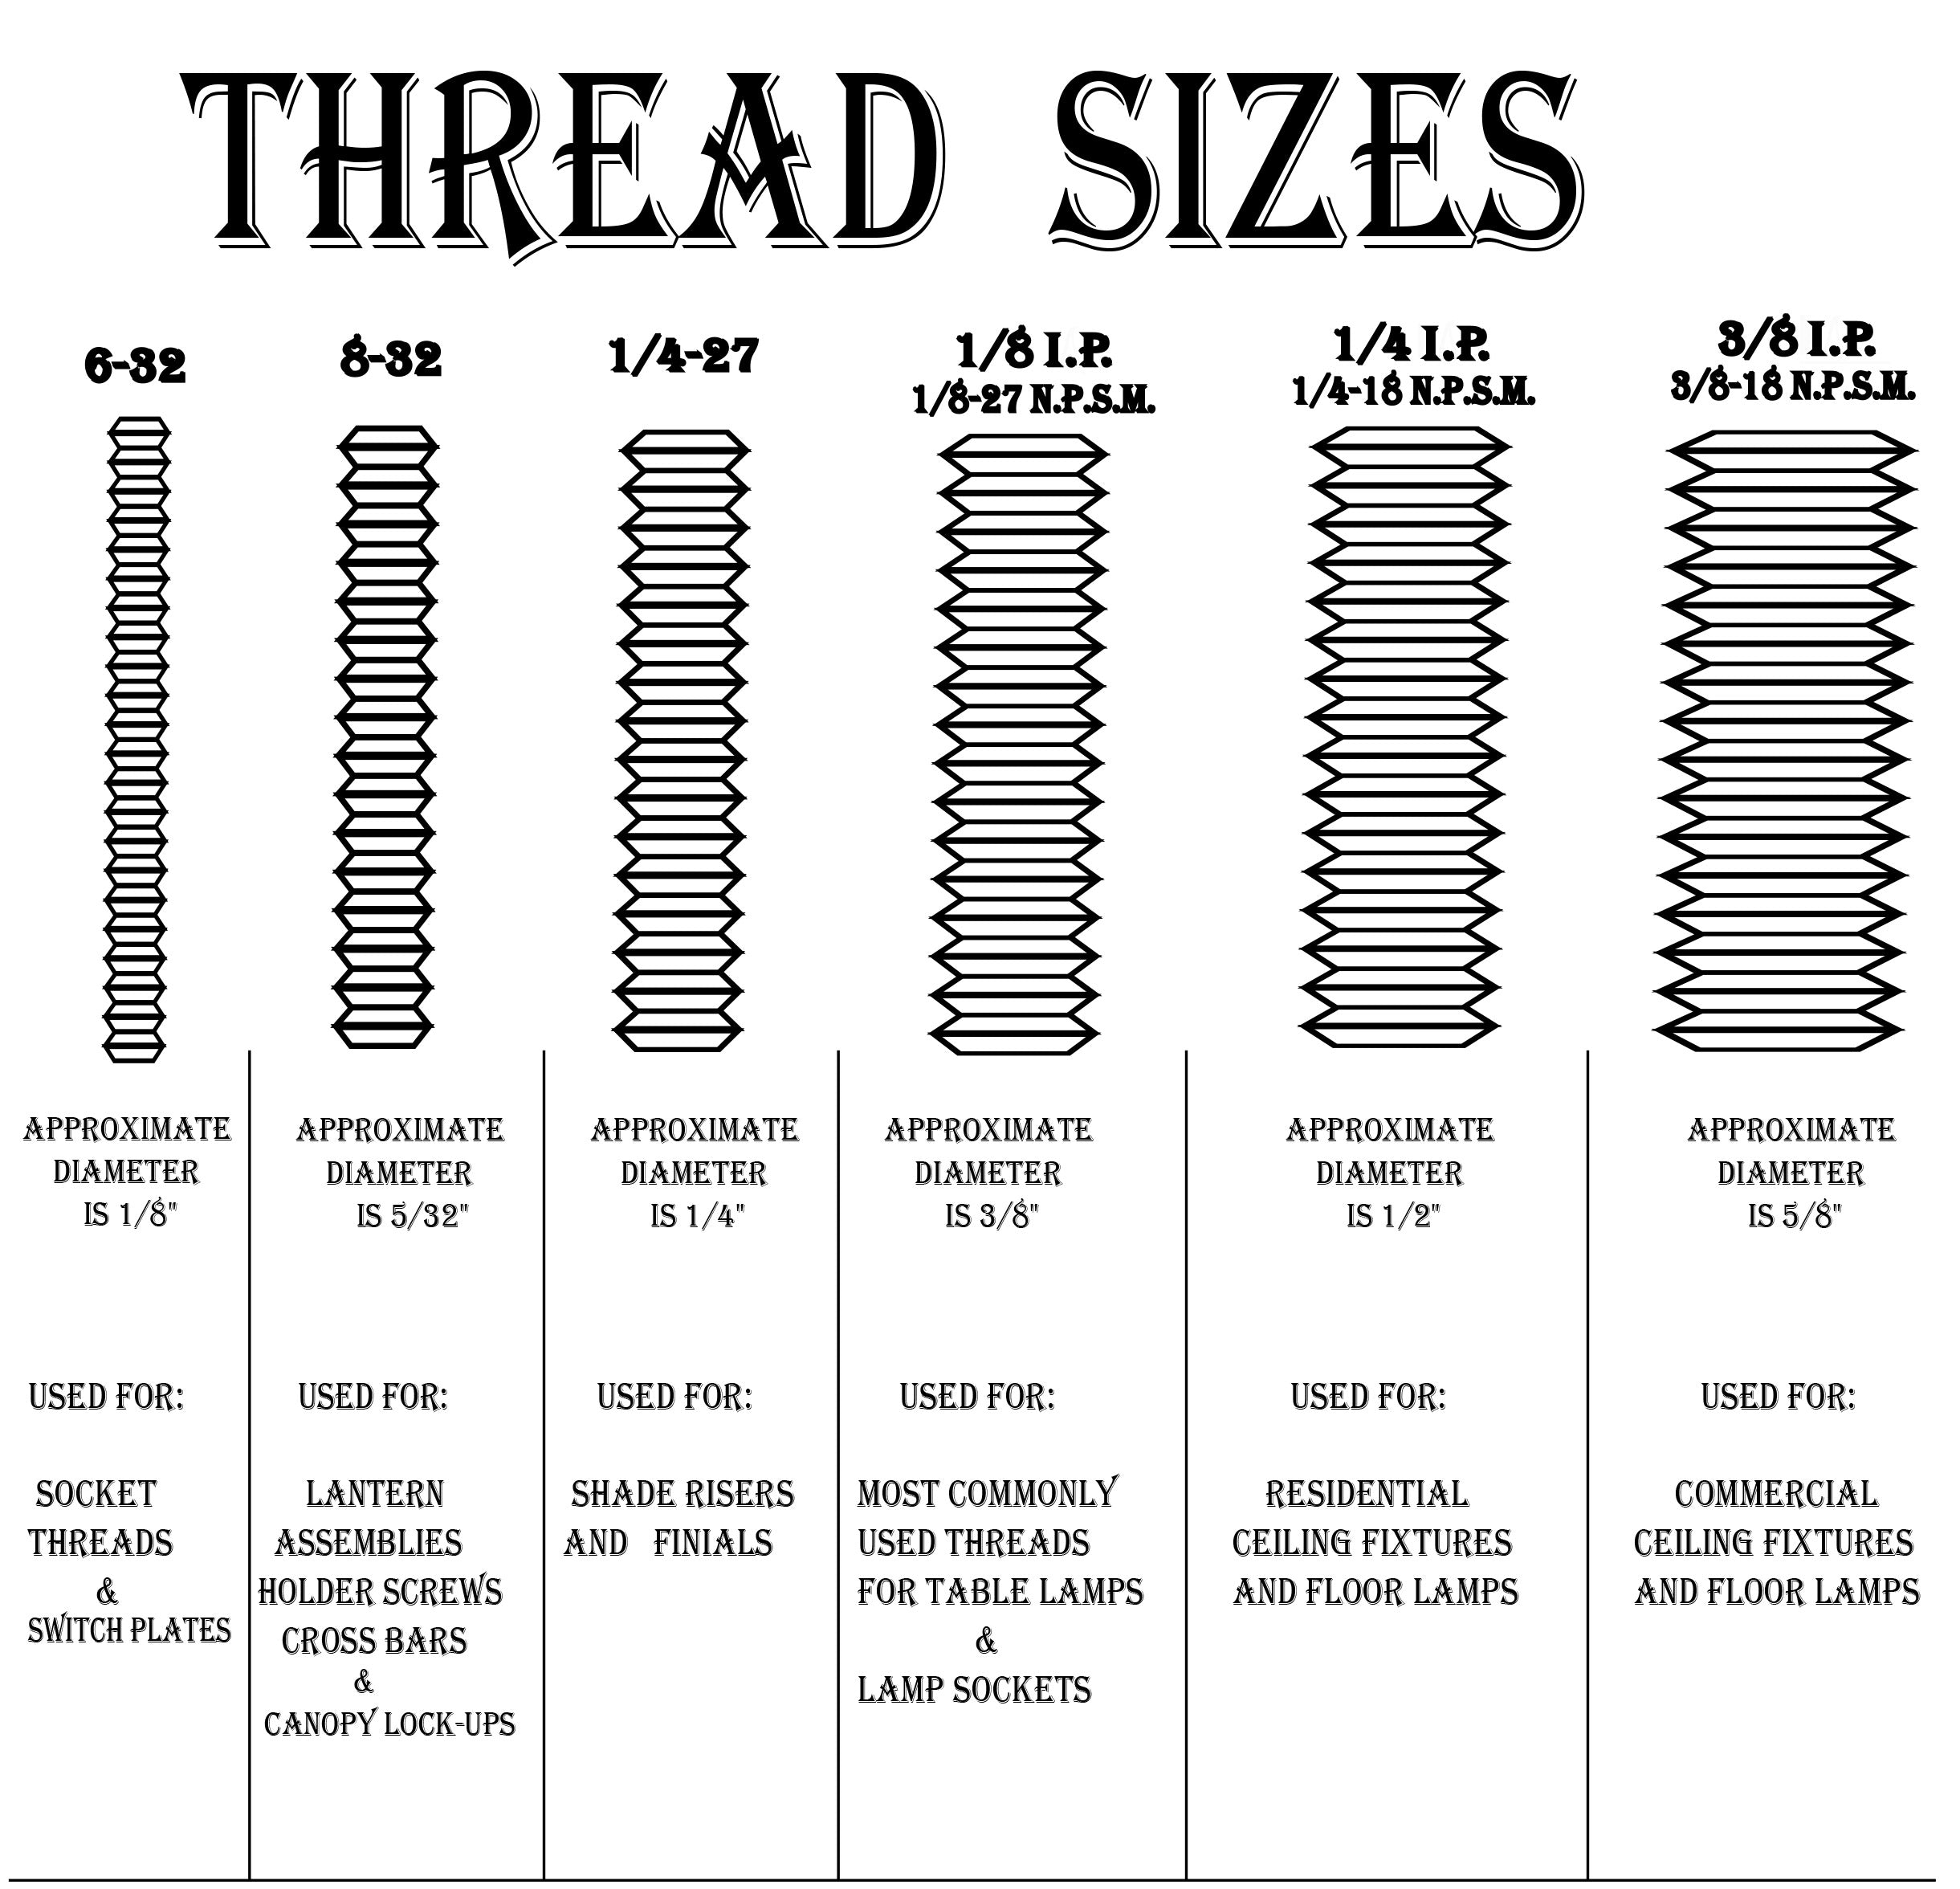 24" long 4-36 All Thread